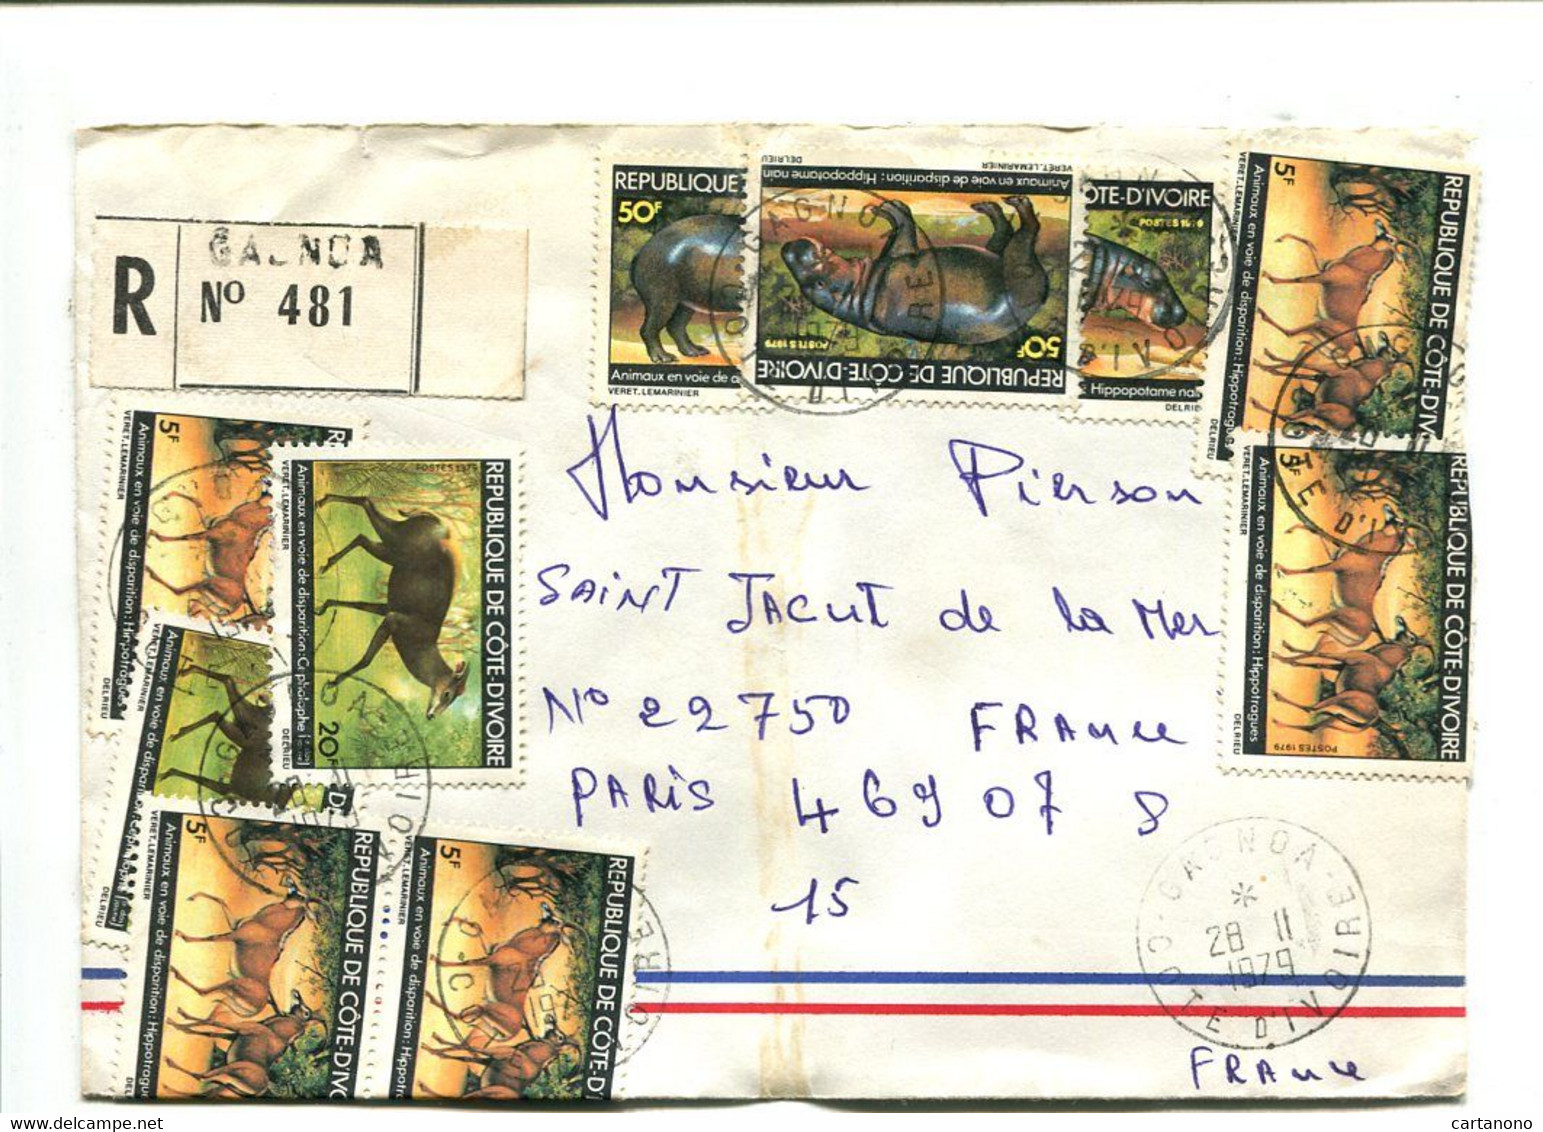 COTE D'IVOIRE 1979 - Affranchissement Sur Lettre Recommandée - Hippopotame - Ivory Coast (1960-...)